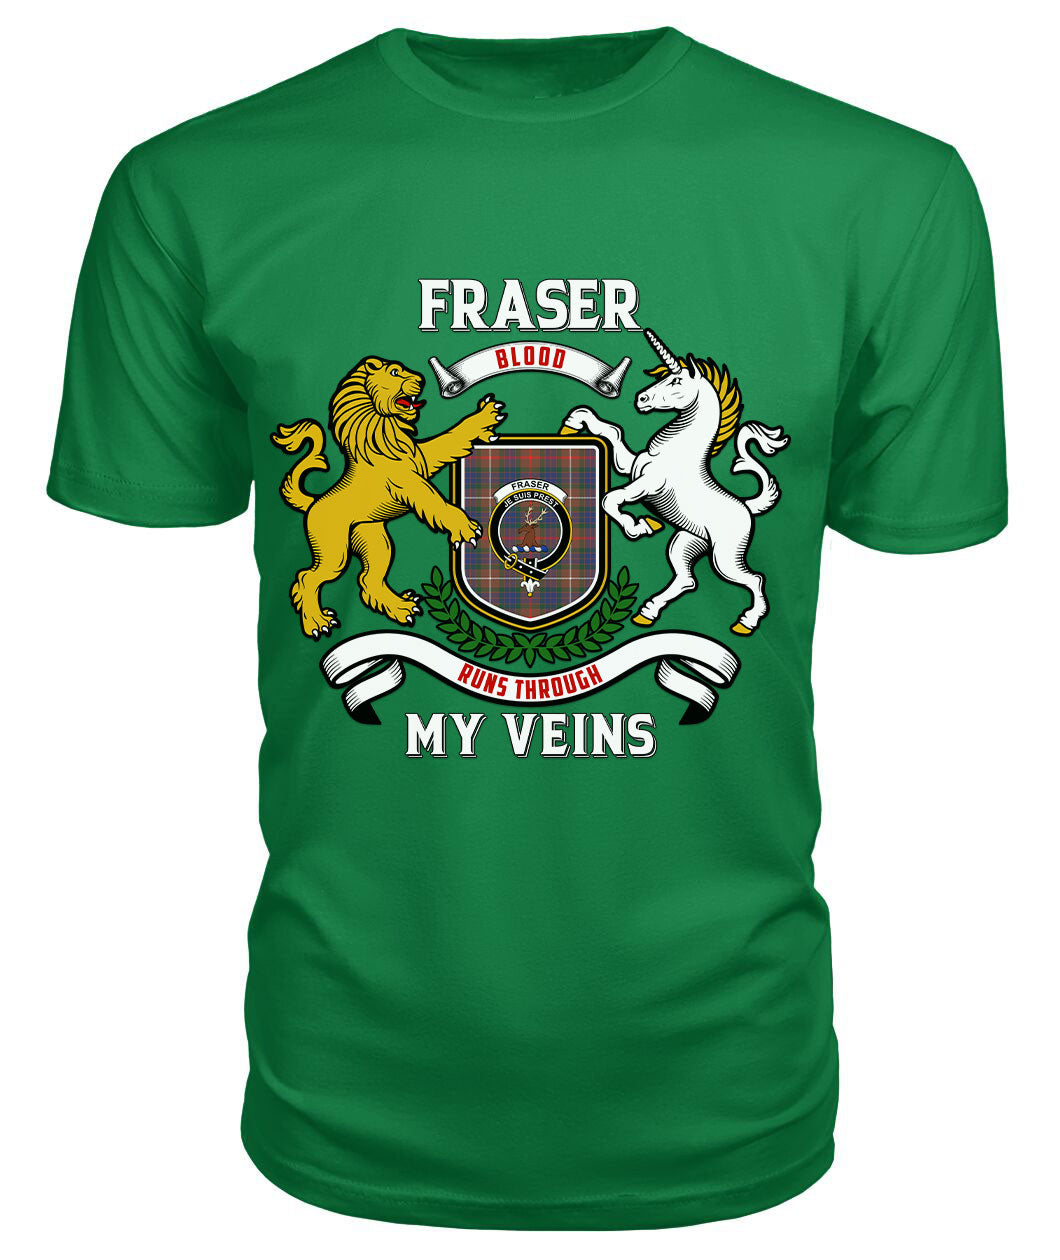 Fraser (of Lovat) Hunting Modern Tartan Crest 2D T-shirt - Blood Runs Through My Veins Style